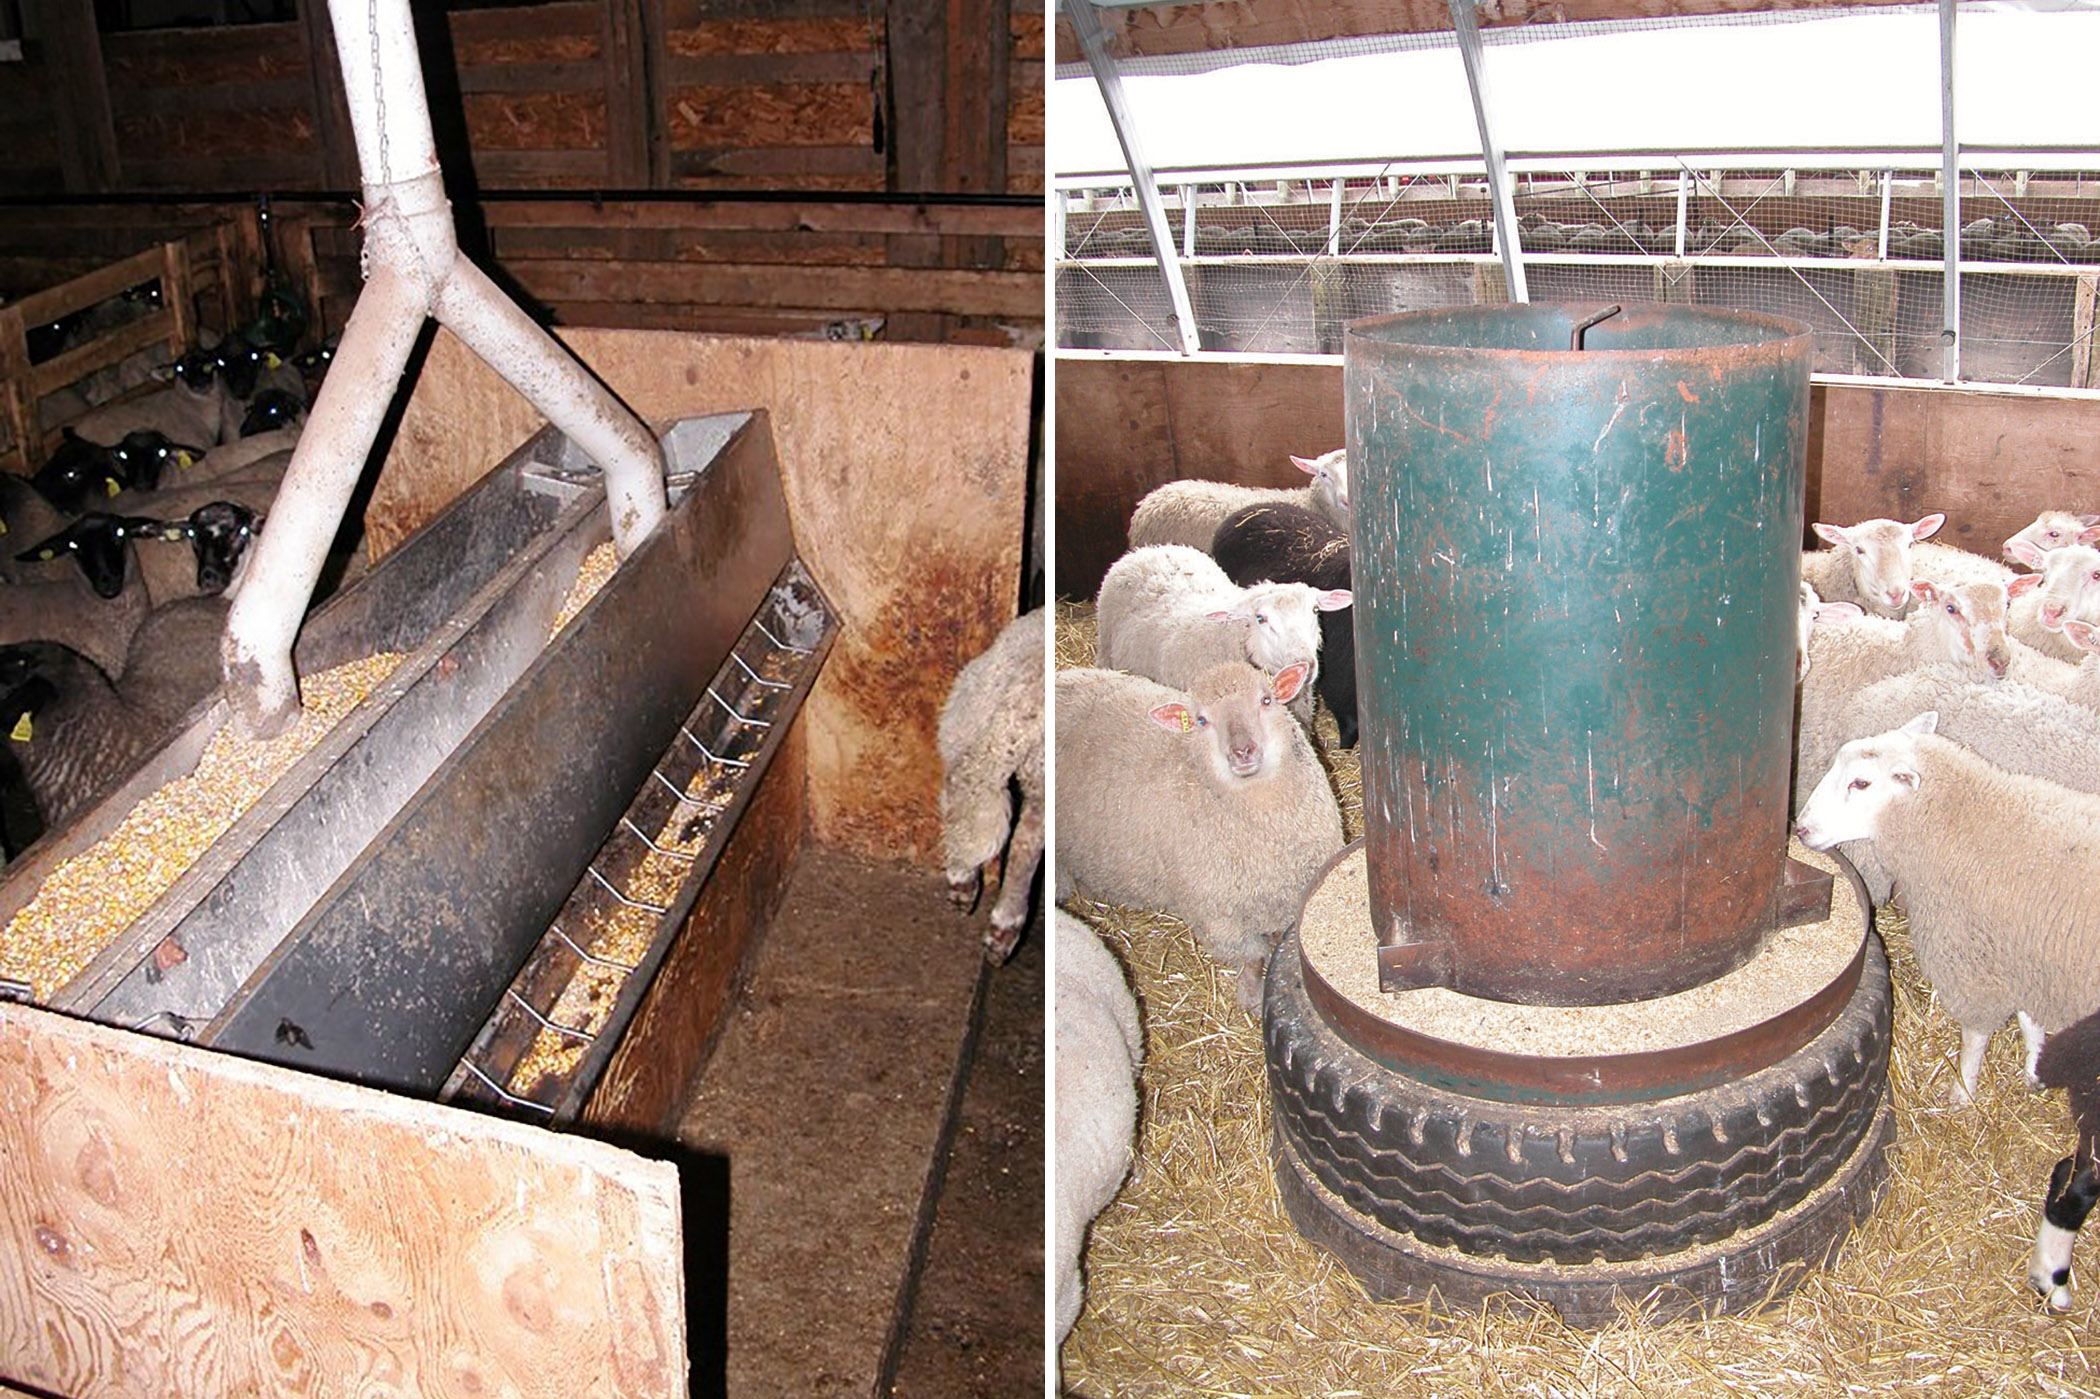 Figure 3a. Intérieur d’une bergerie où l’on voit deux rangées d’enclos. Un conduit de distribution surélevé est raccordé à des conduits de chute qui descendent dans chacun des enclos. Figure 3b. Photo d’une trémie ronde pour porcs relevée à l’aide d’un pneu pour que les moutons puissent se nourrir.